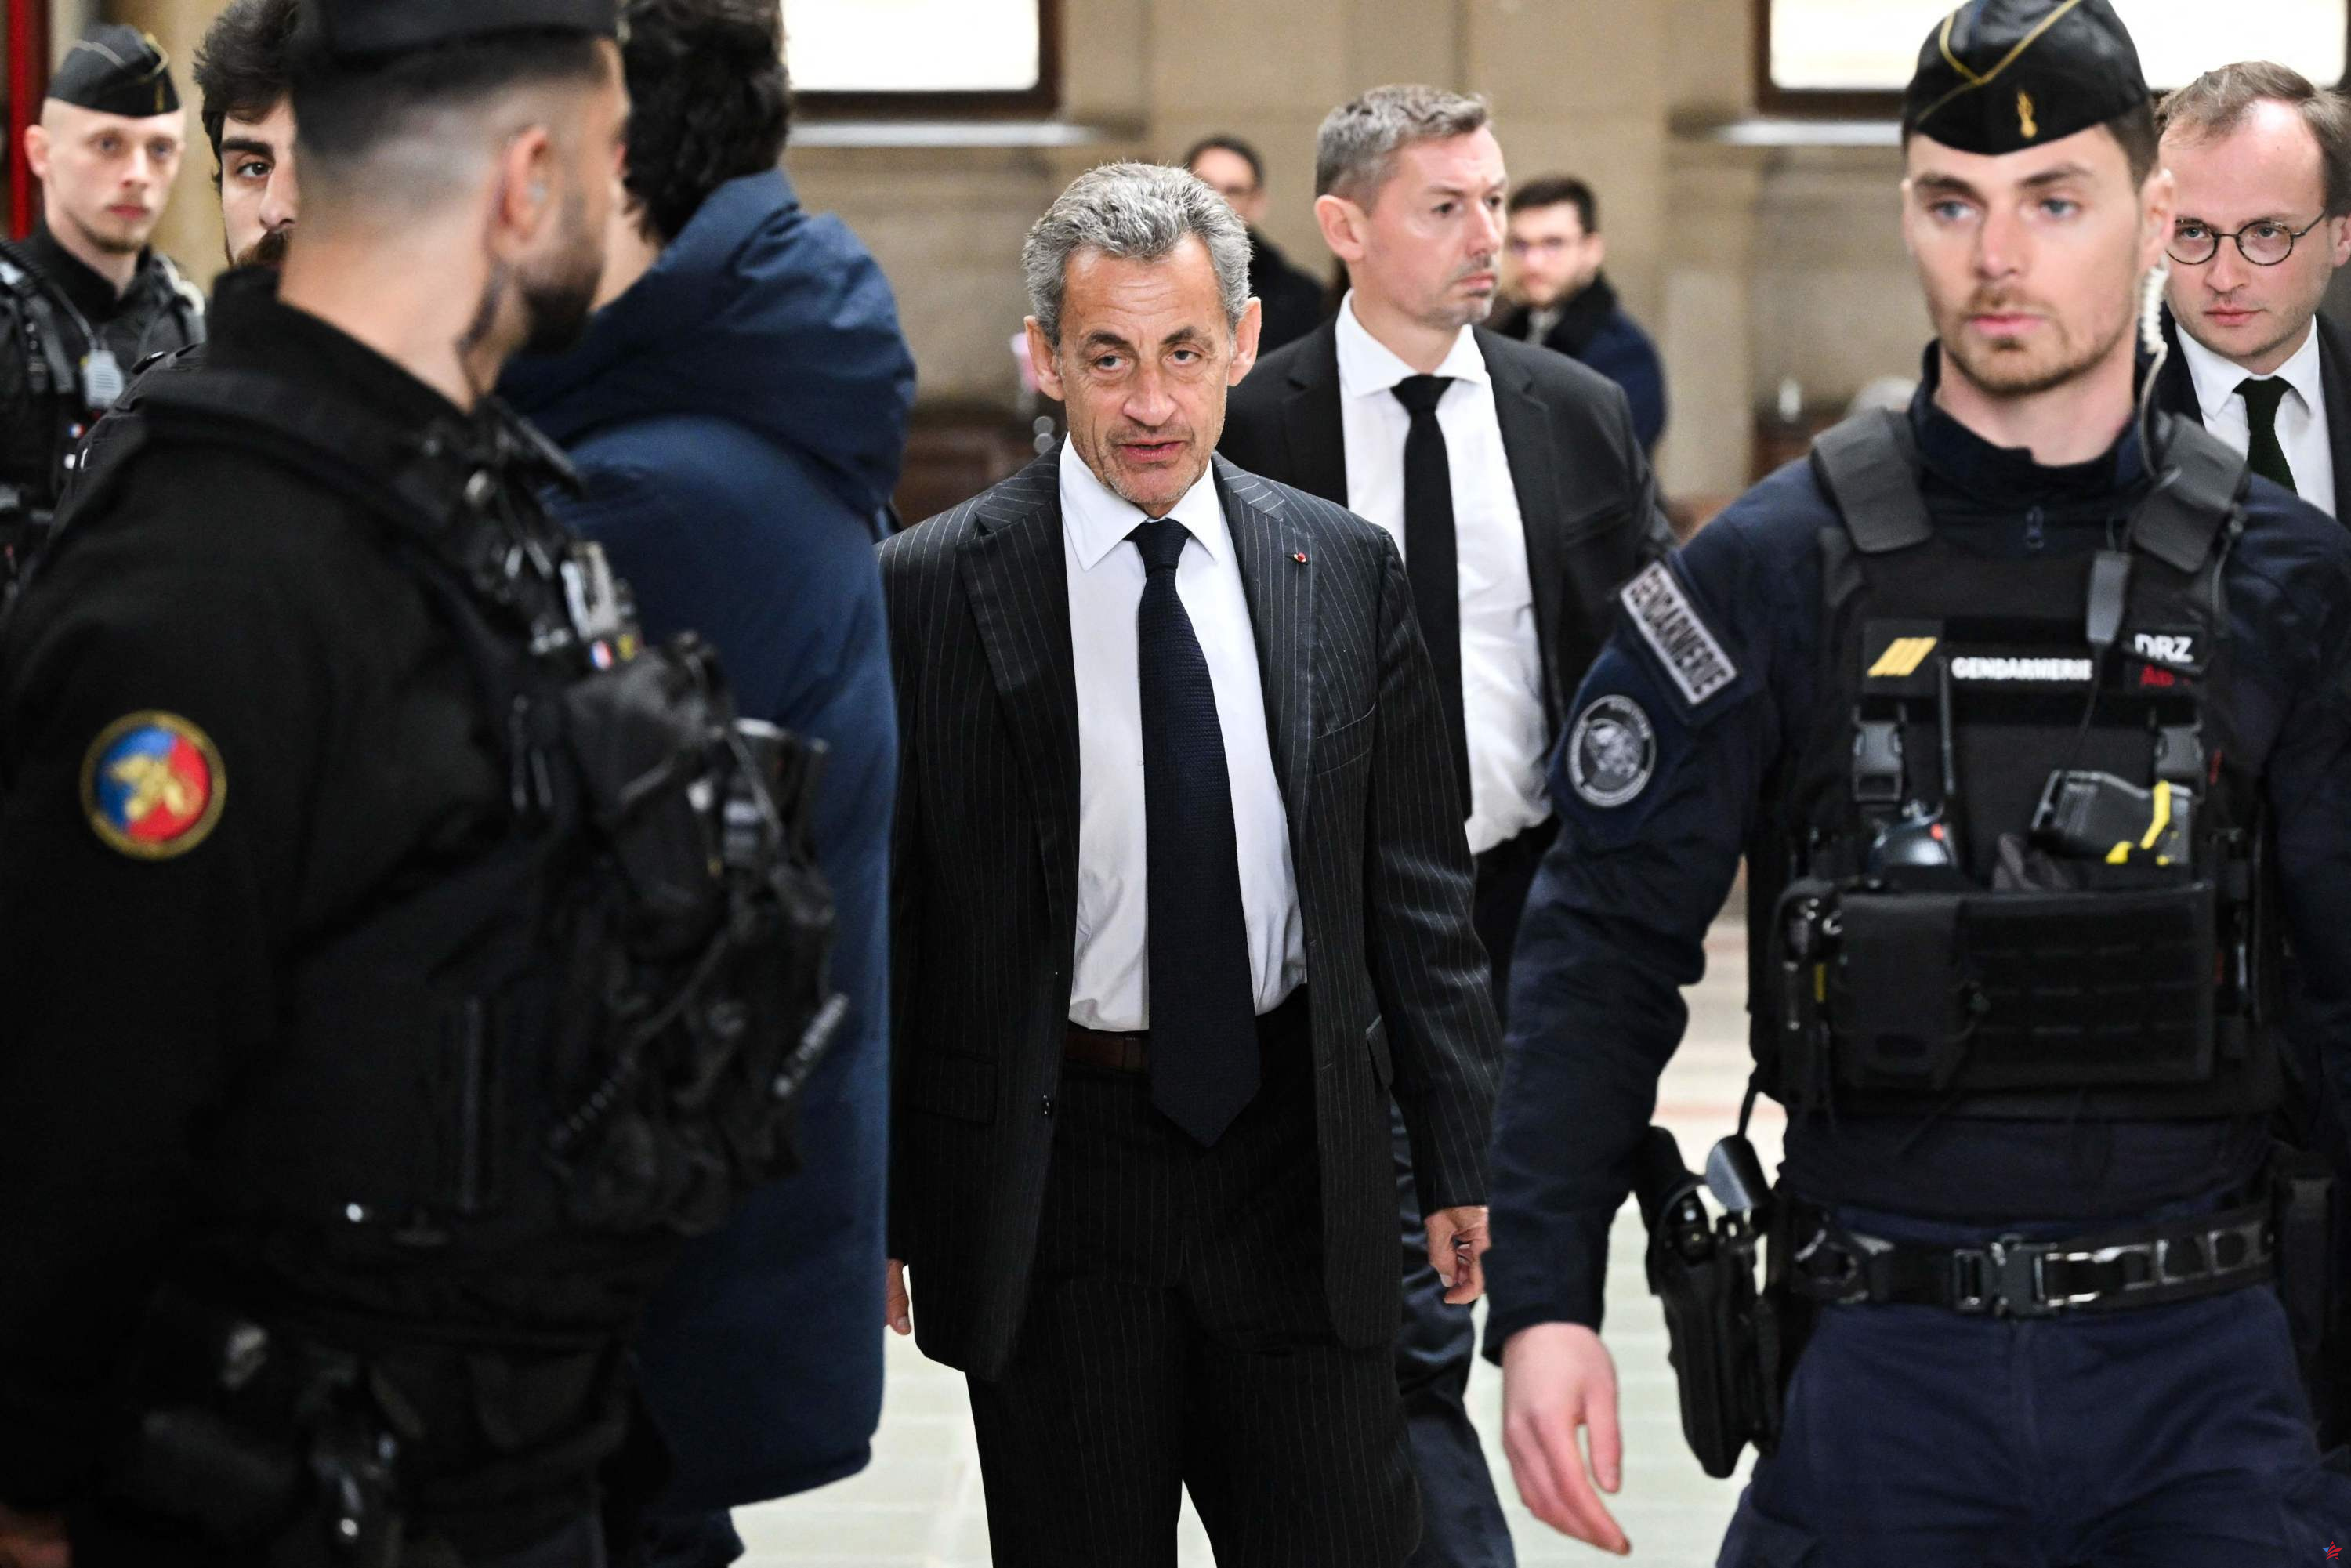 Asunto Bygmalion: Nicolas Sarkozy condenado en apelación a un año de prisión, de los cuales seis meses de suspensión